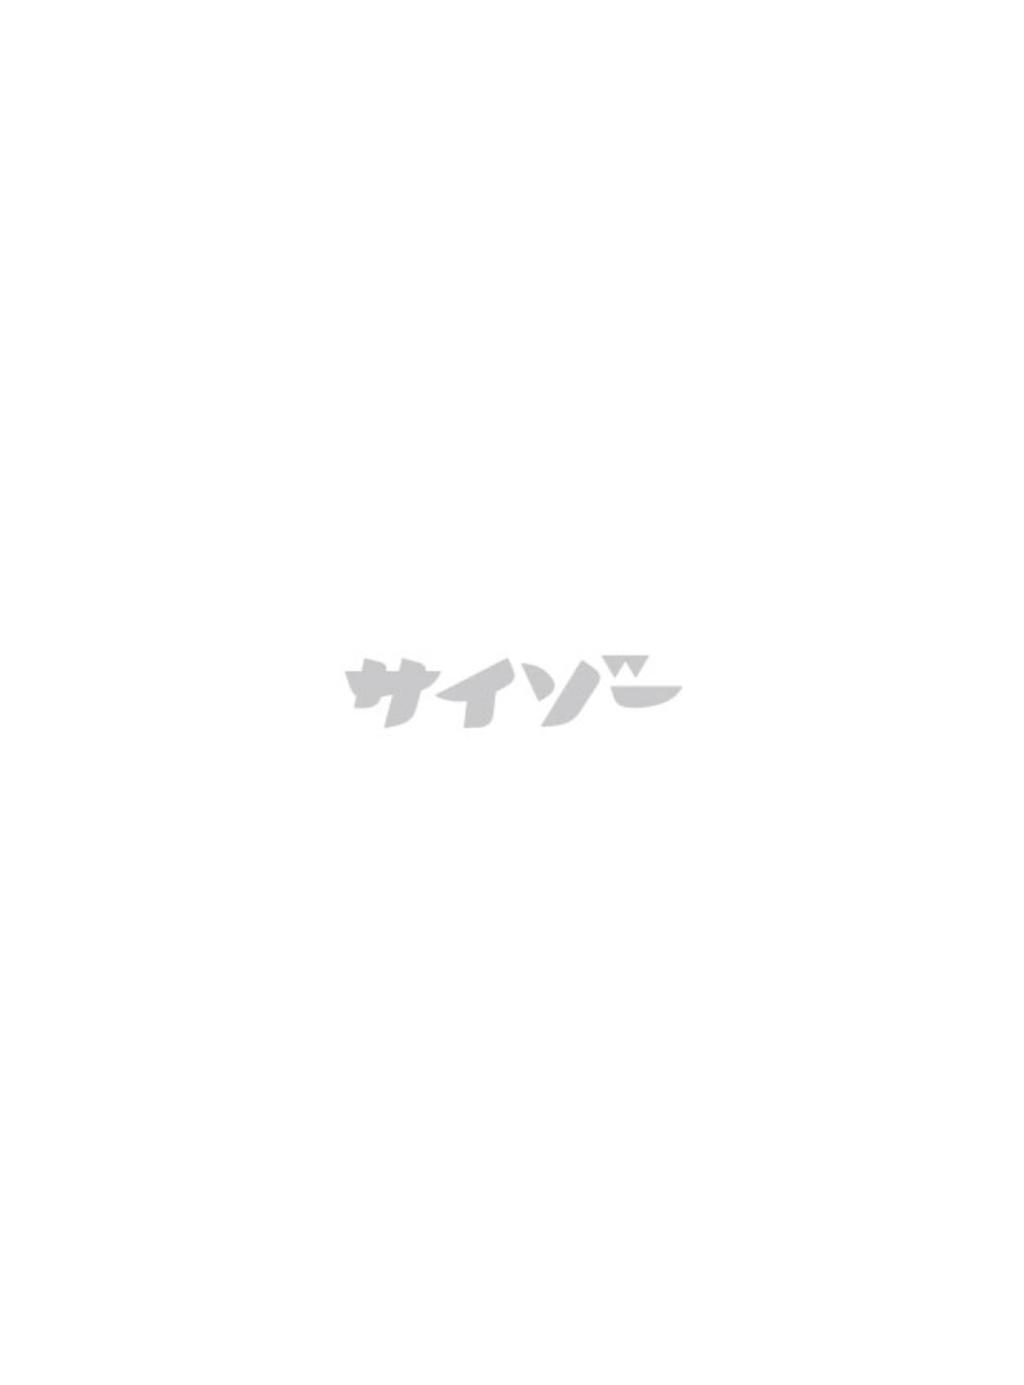 Cyzo(サイゾー) 2016.01 (笕美和子 片山萌美 都丸紗也華 神谷えりな 朝比奈花恋 岸井ゆきの)